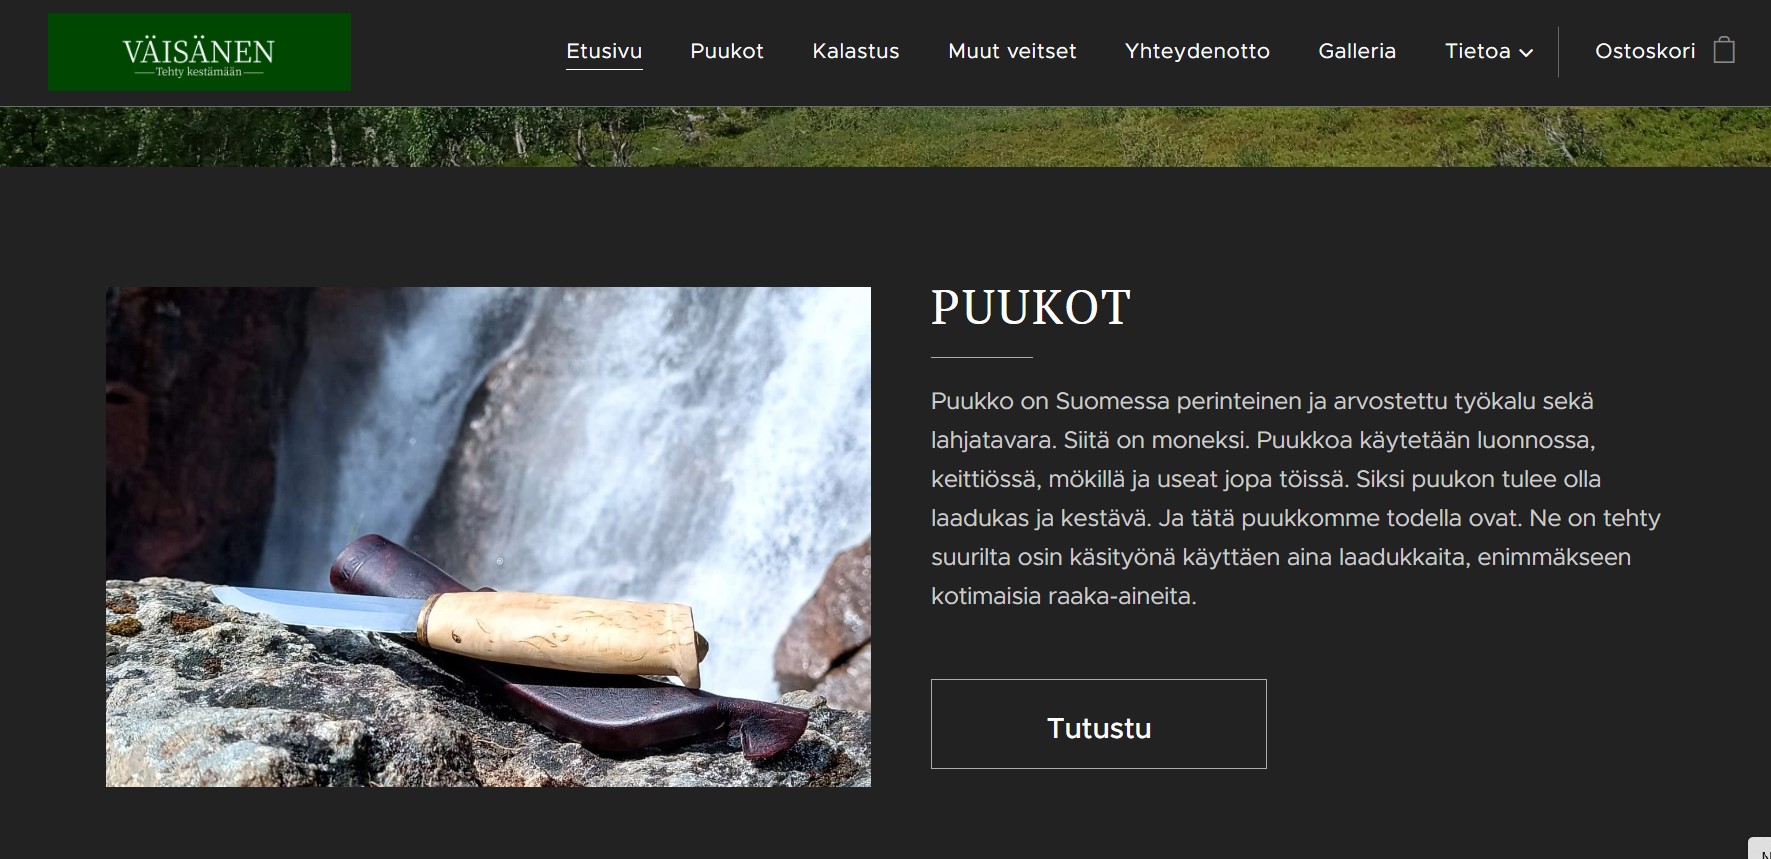 Vaisanenpuukot.fi -verkkosivujen alkunäkymä, jossa on kuva puukosta ja esittelyteksti.